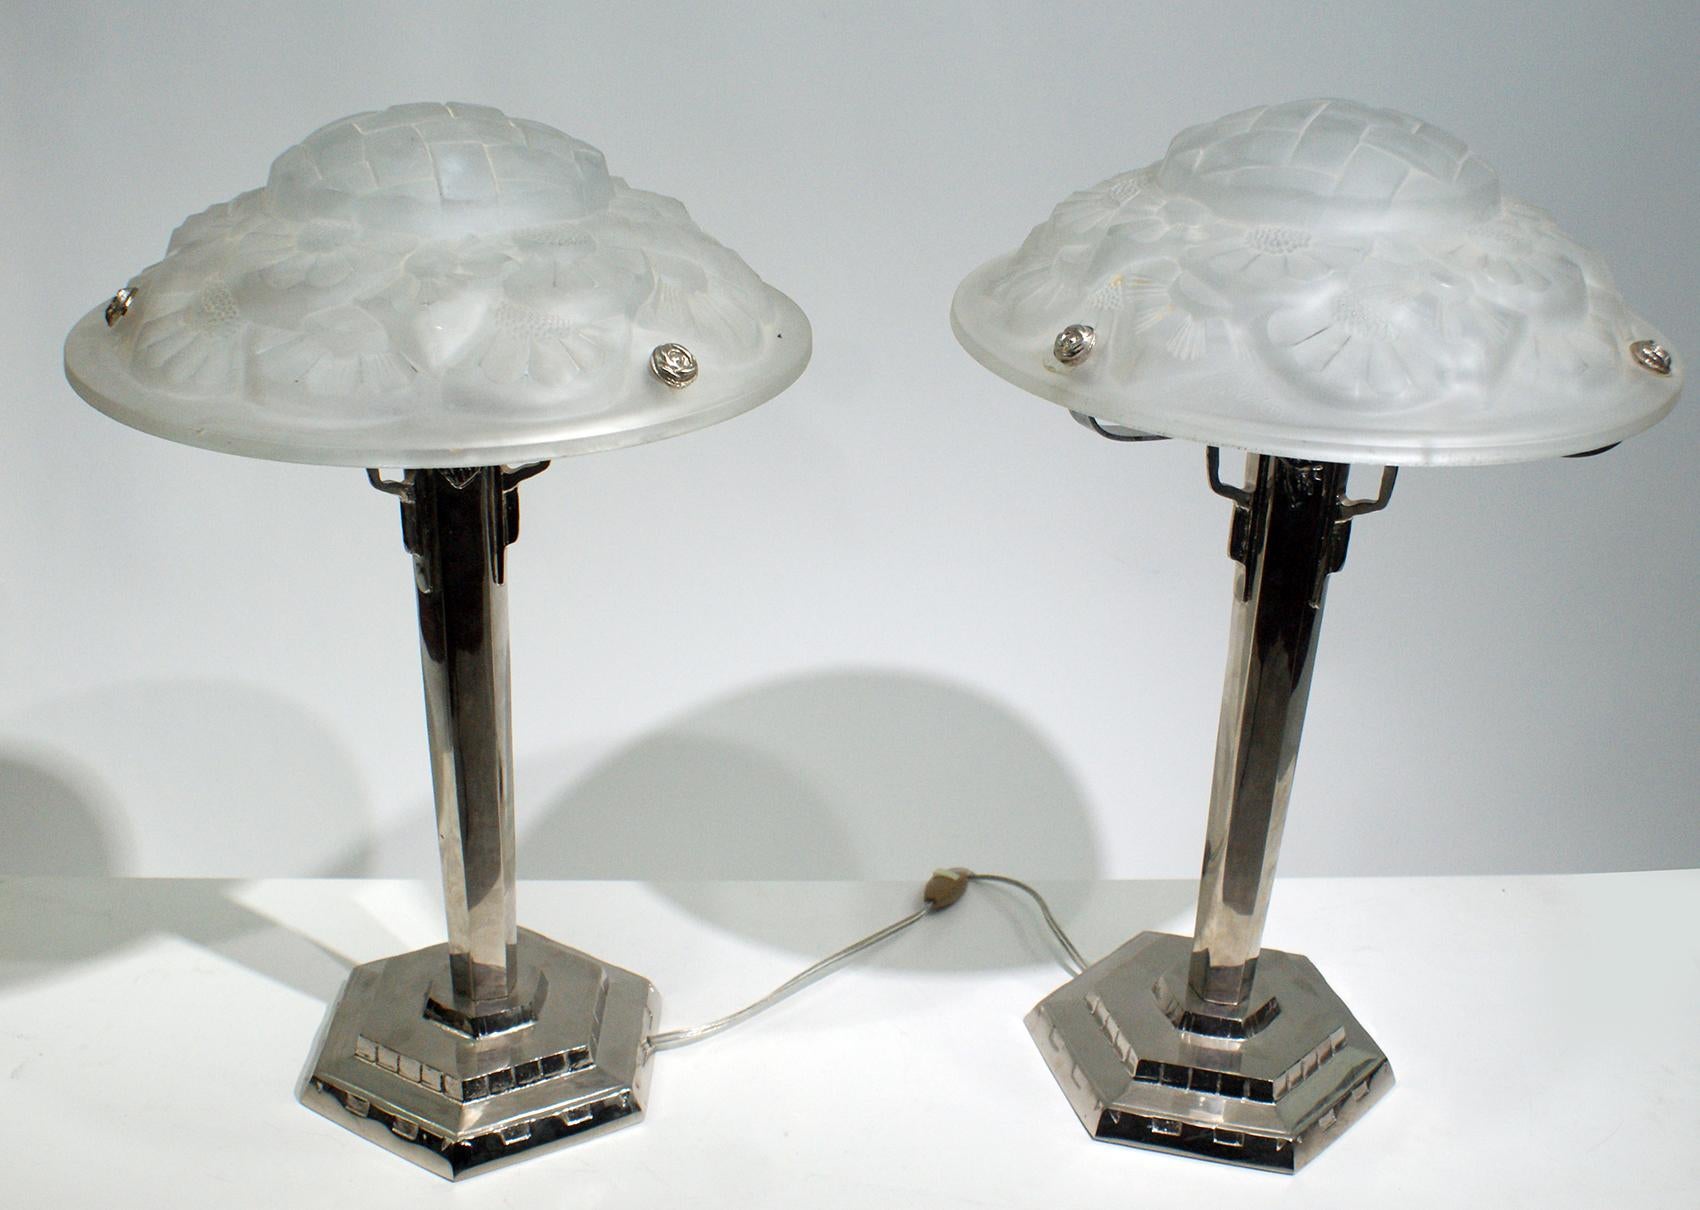 Charmante paire de lampes de table Art Déco, panneau en verre moulé de haute qualité avec un rare motif floral original en relief incluant la signature 